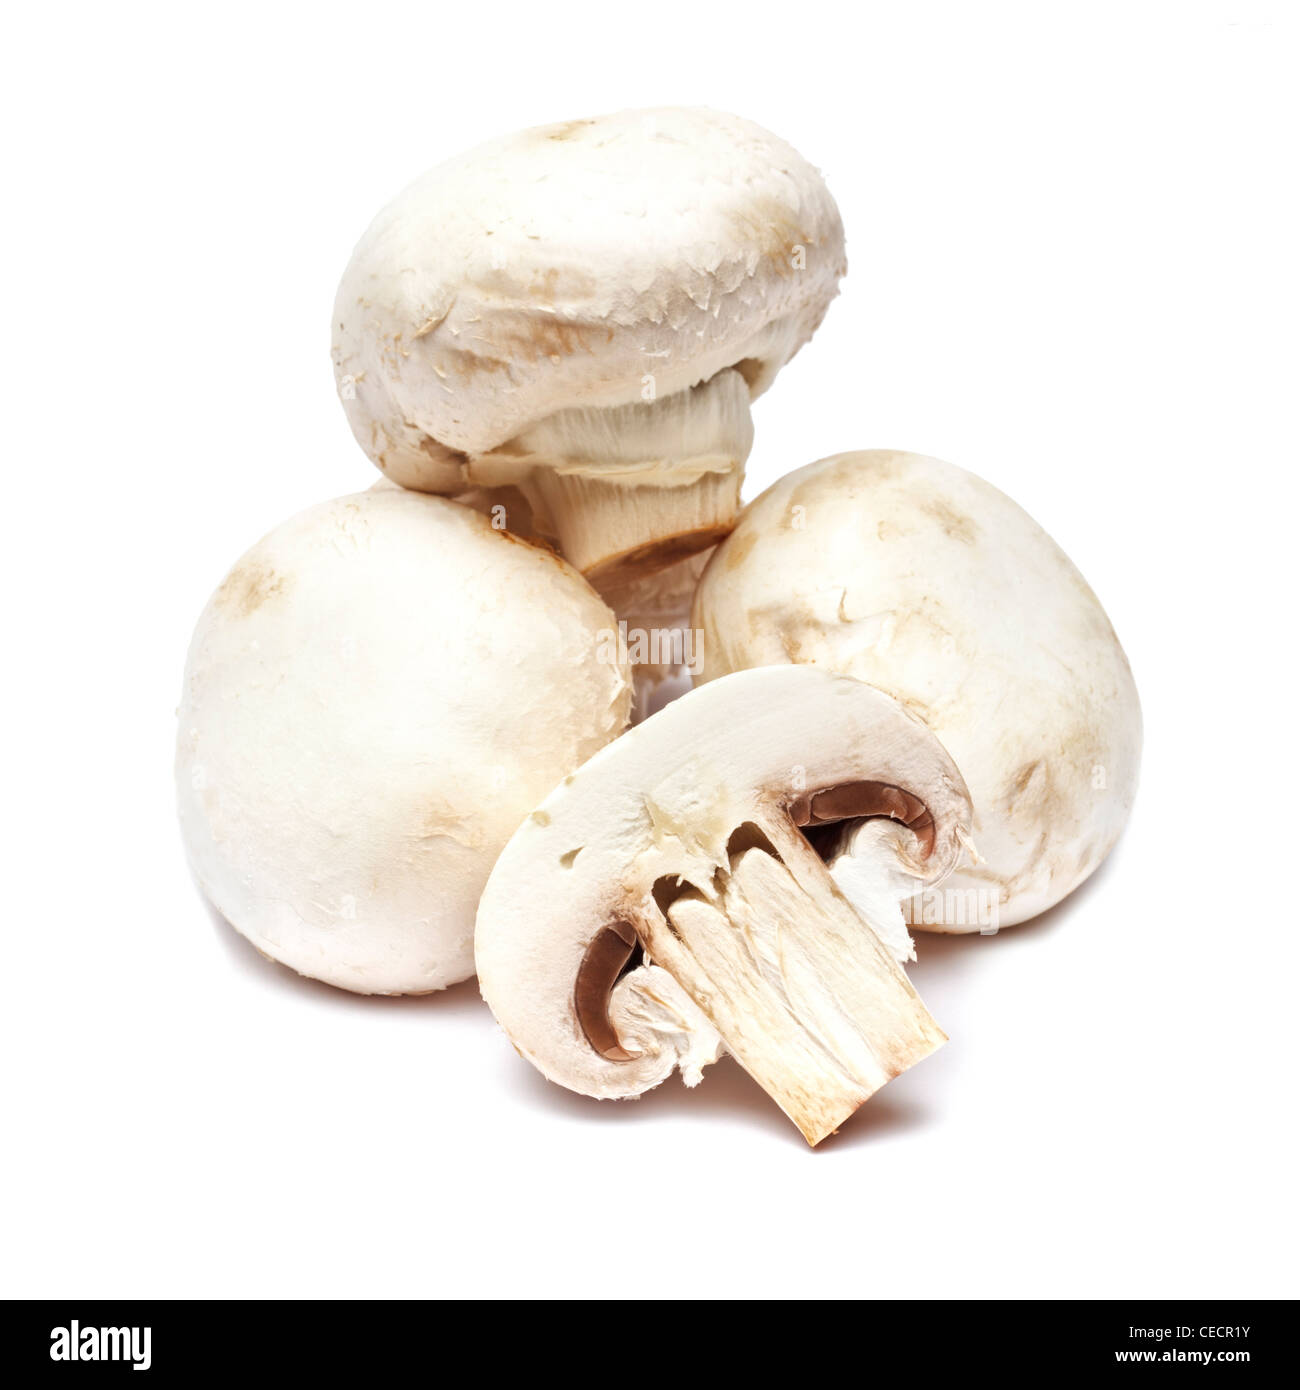 Mushrooms on white background Stock Photo